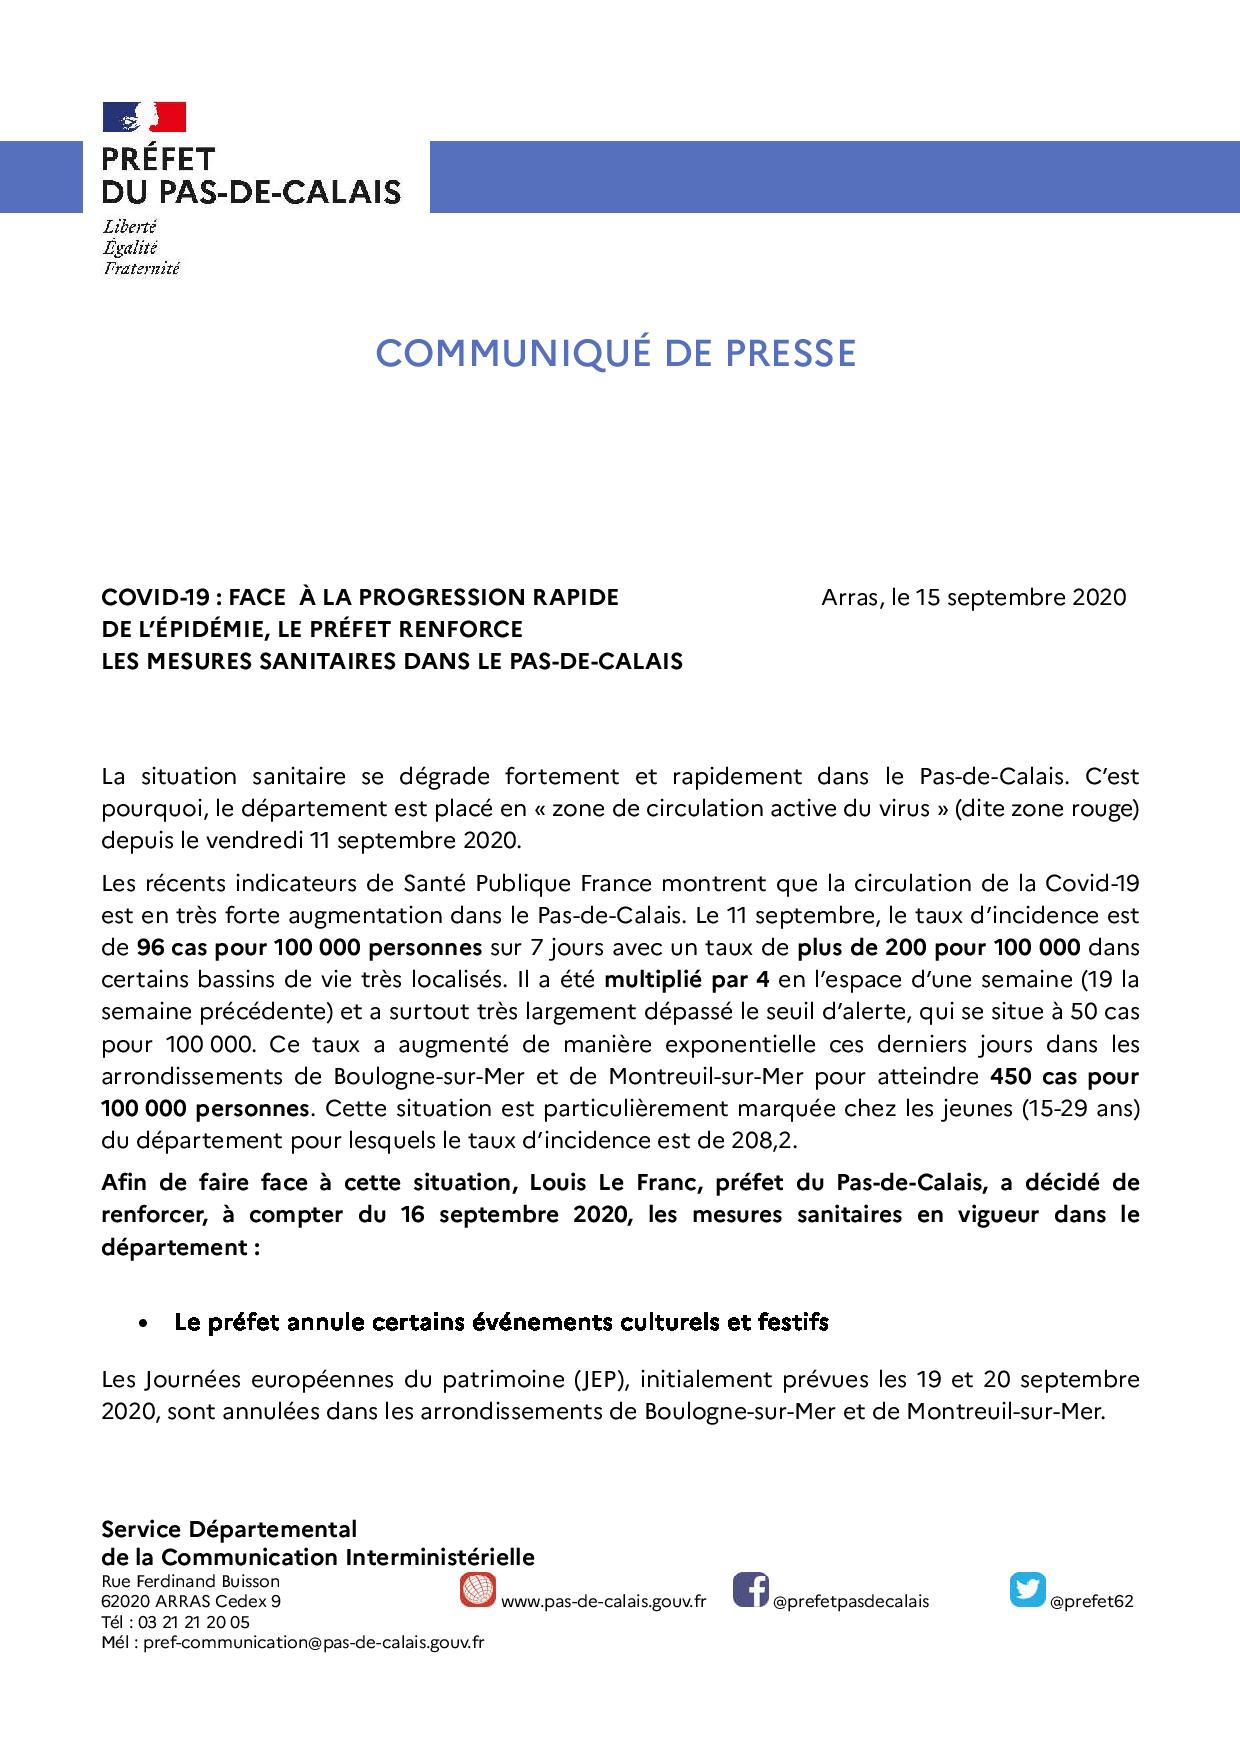 2020 09 15 renforcement des mesures sanitaires pour lutter contre la propagation du virus dans le Pas de Calais page 001